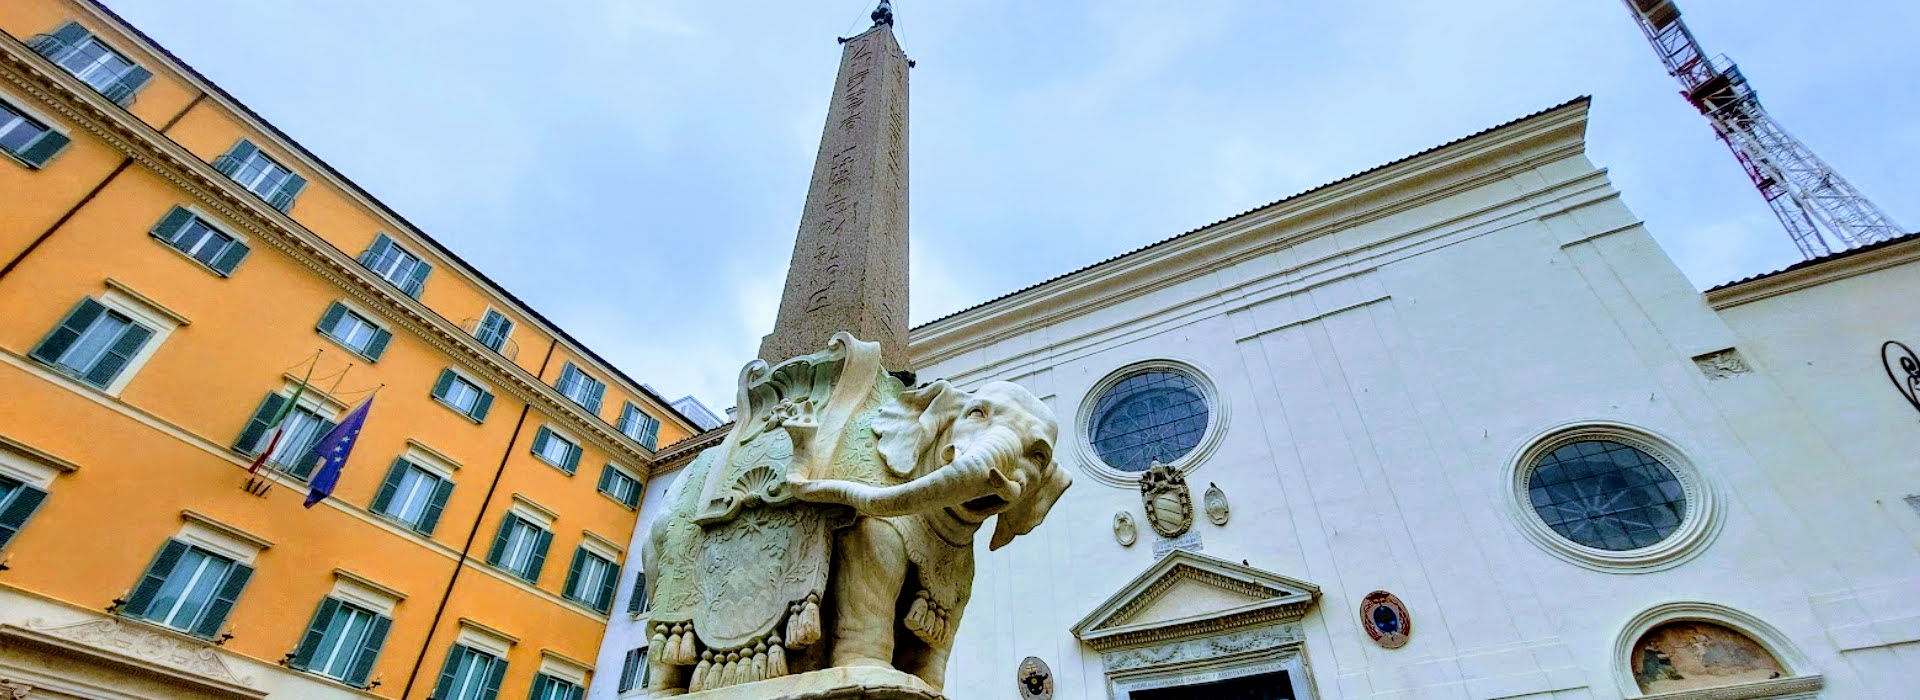 Obelisco della Minerva Bernini basamento con piccolo elefante